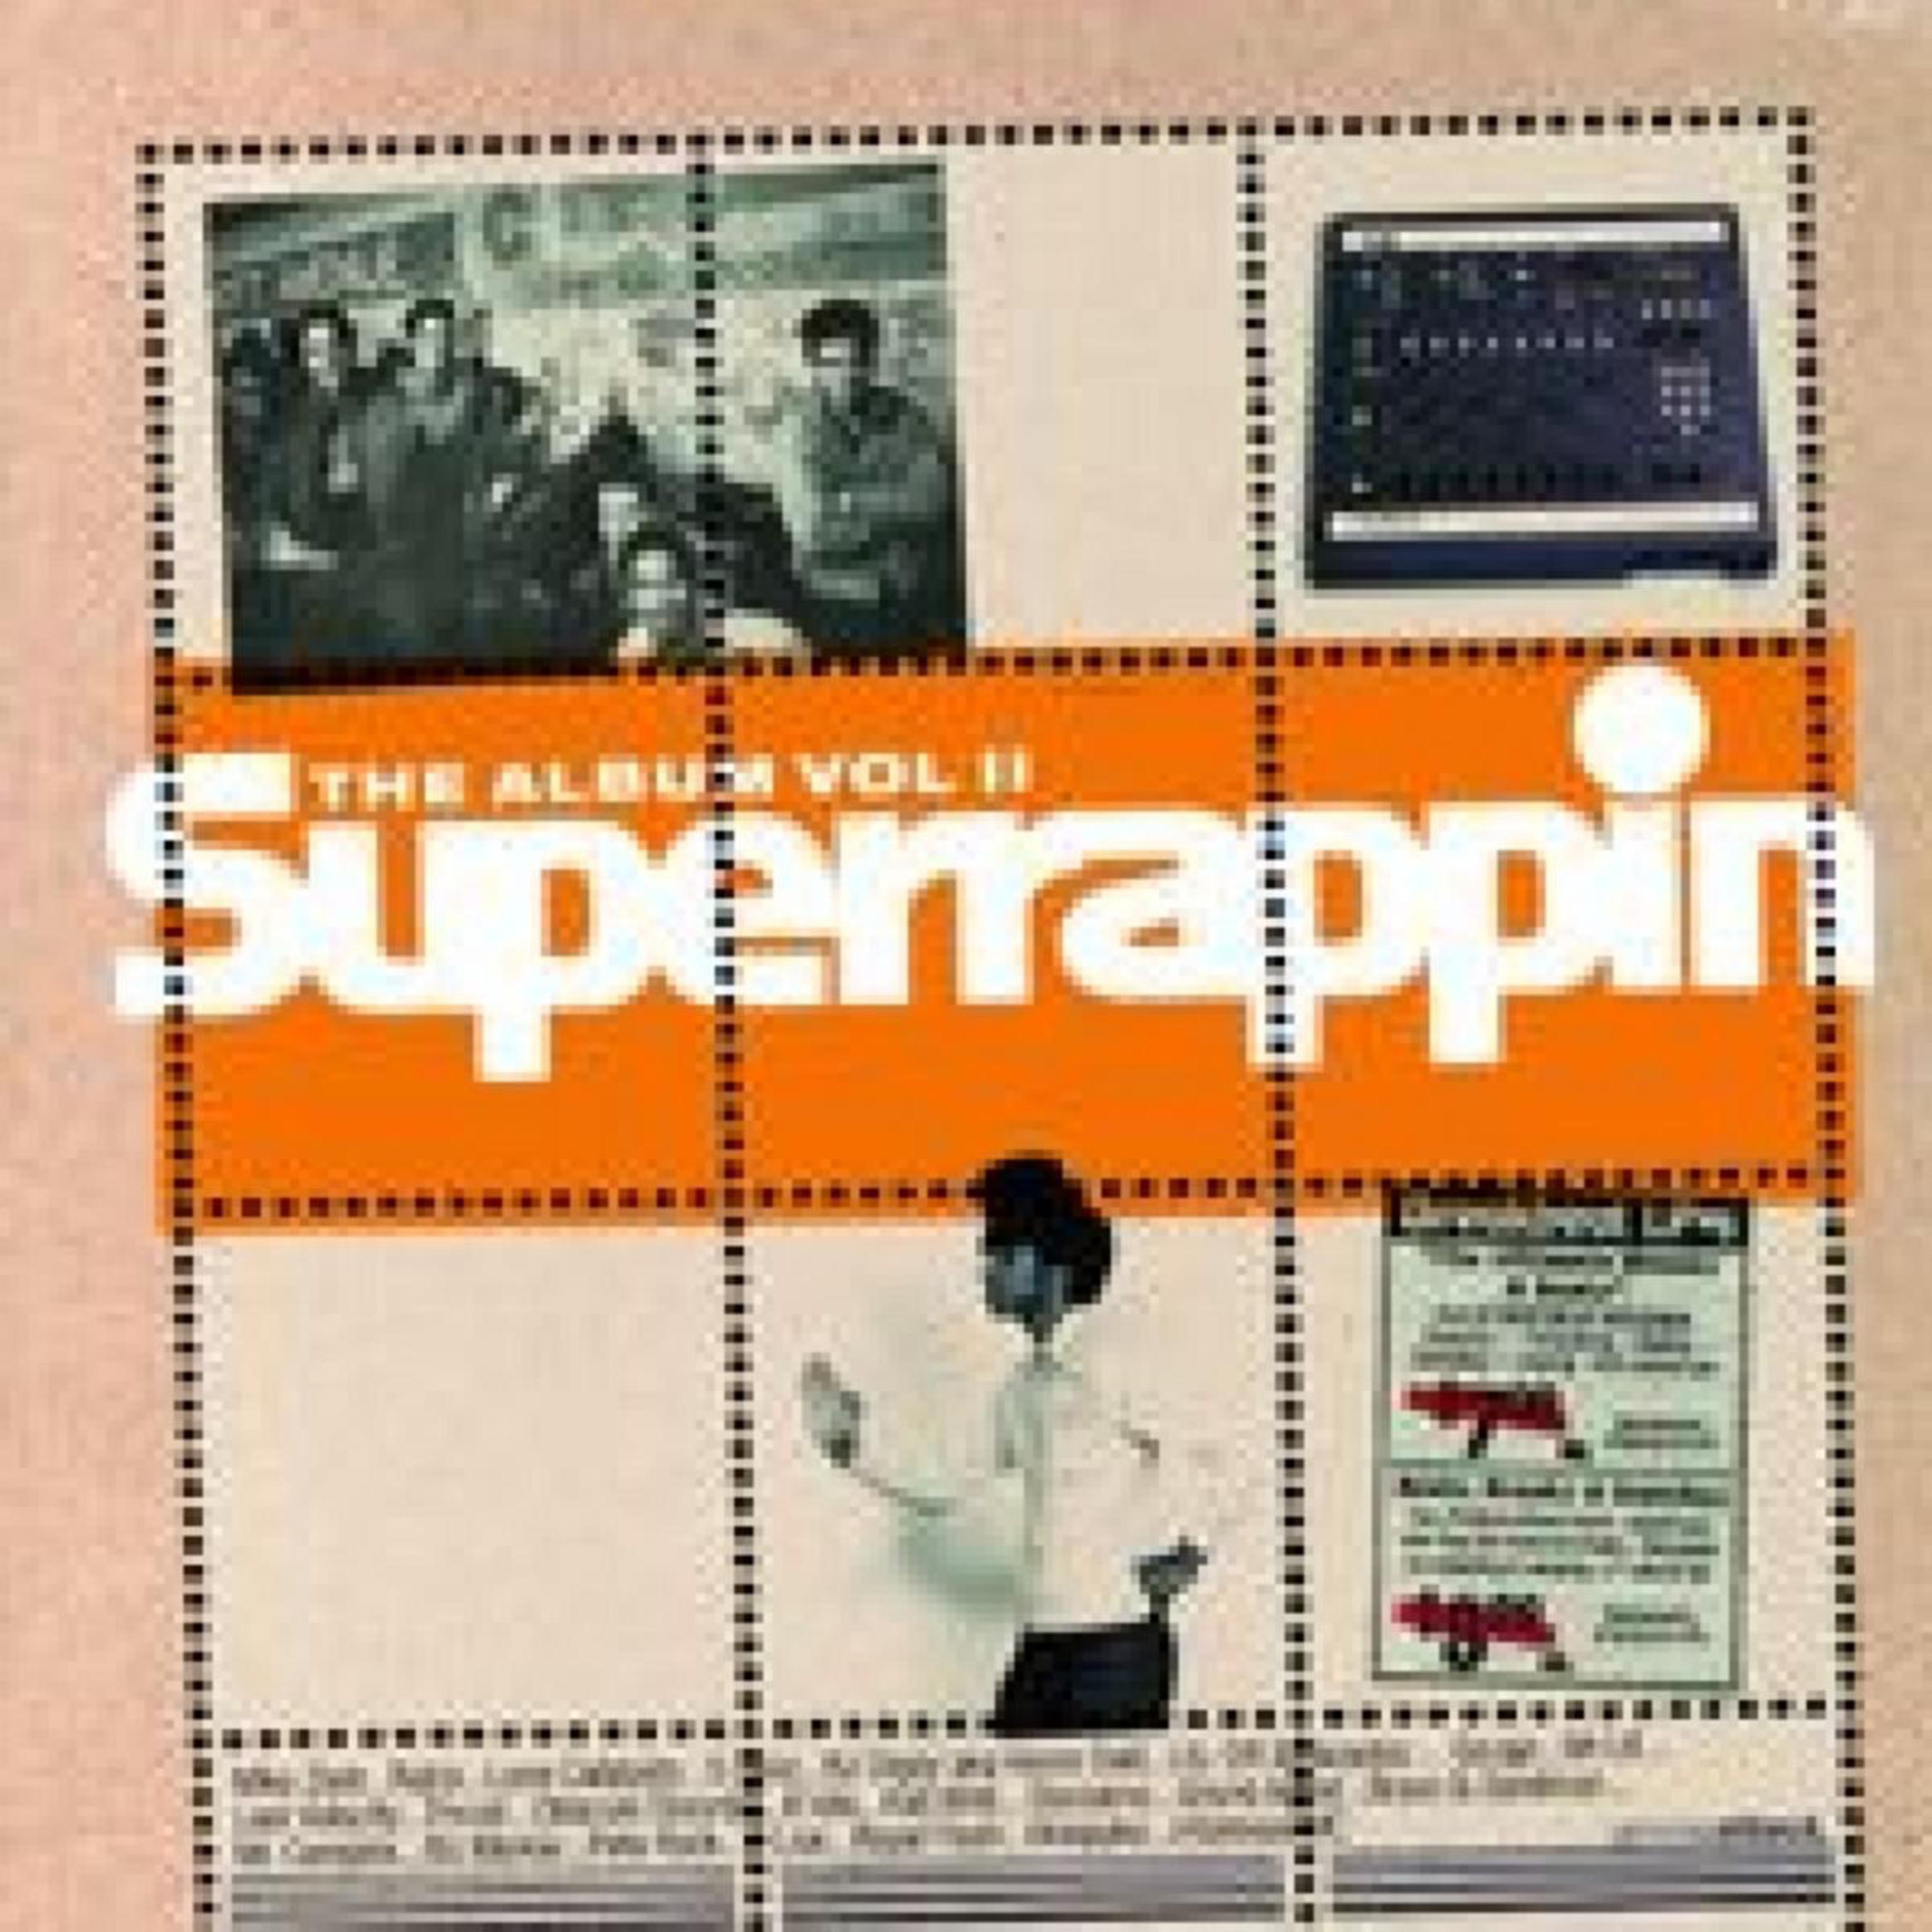 Superrappin - The Album, Vol. 2